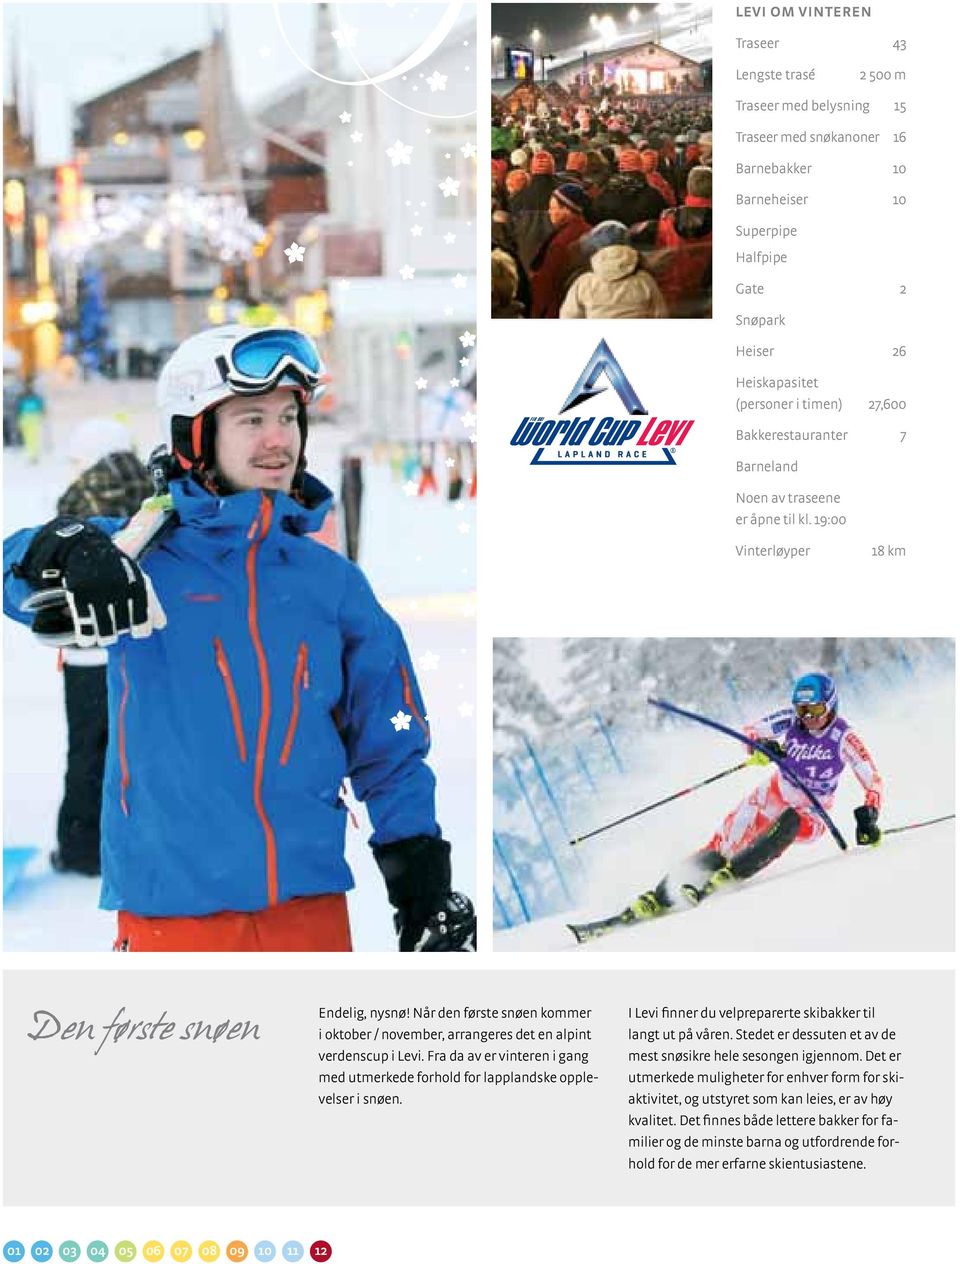 Når den første snøen kommer i oktober / november, arrangeres det en alpint verdenscup i Levi. Fra da av er vinteren i gang med utmerkede forhold for lapplandske opplevelser i snøen.